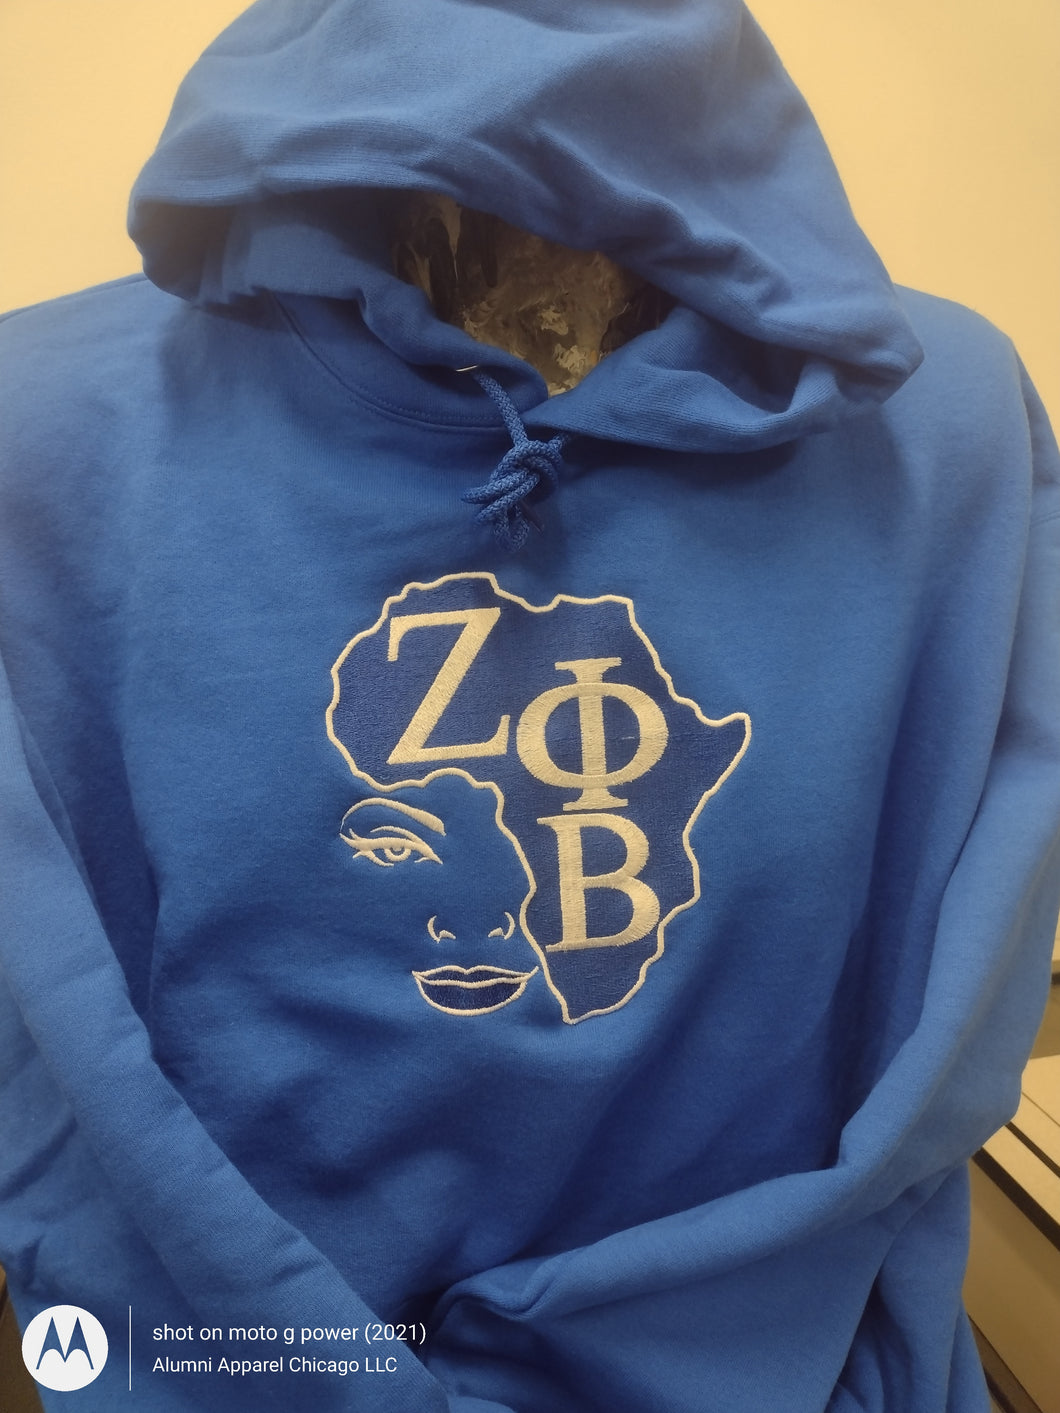 Zeta Heavyweight Embroidered Hooded Sweatshirt